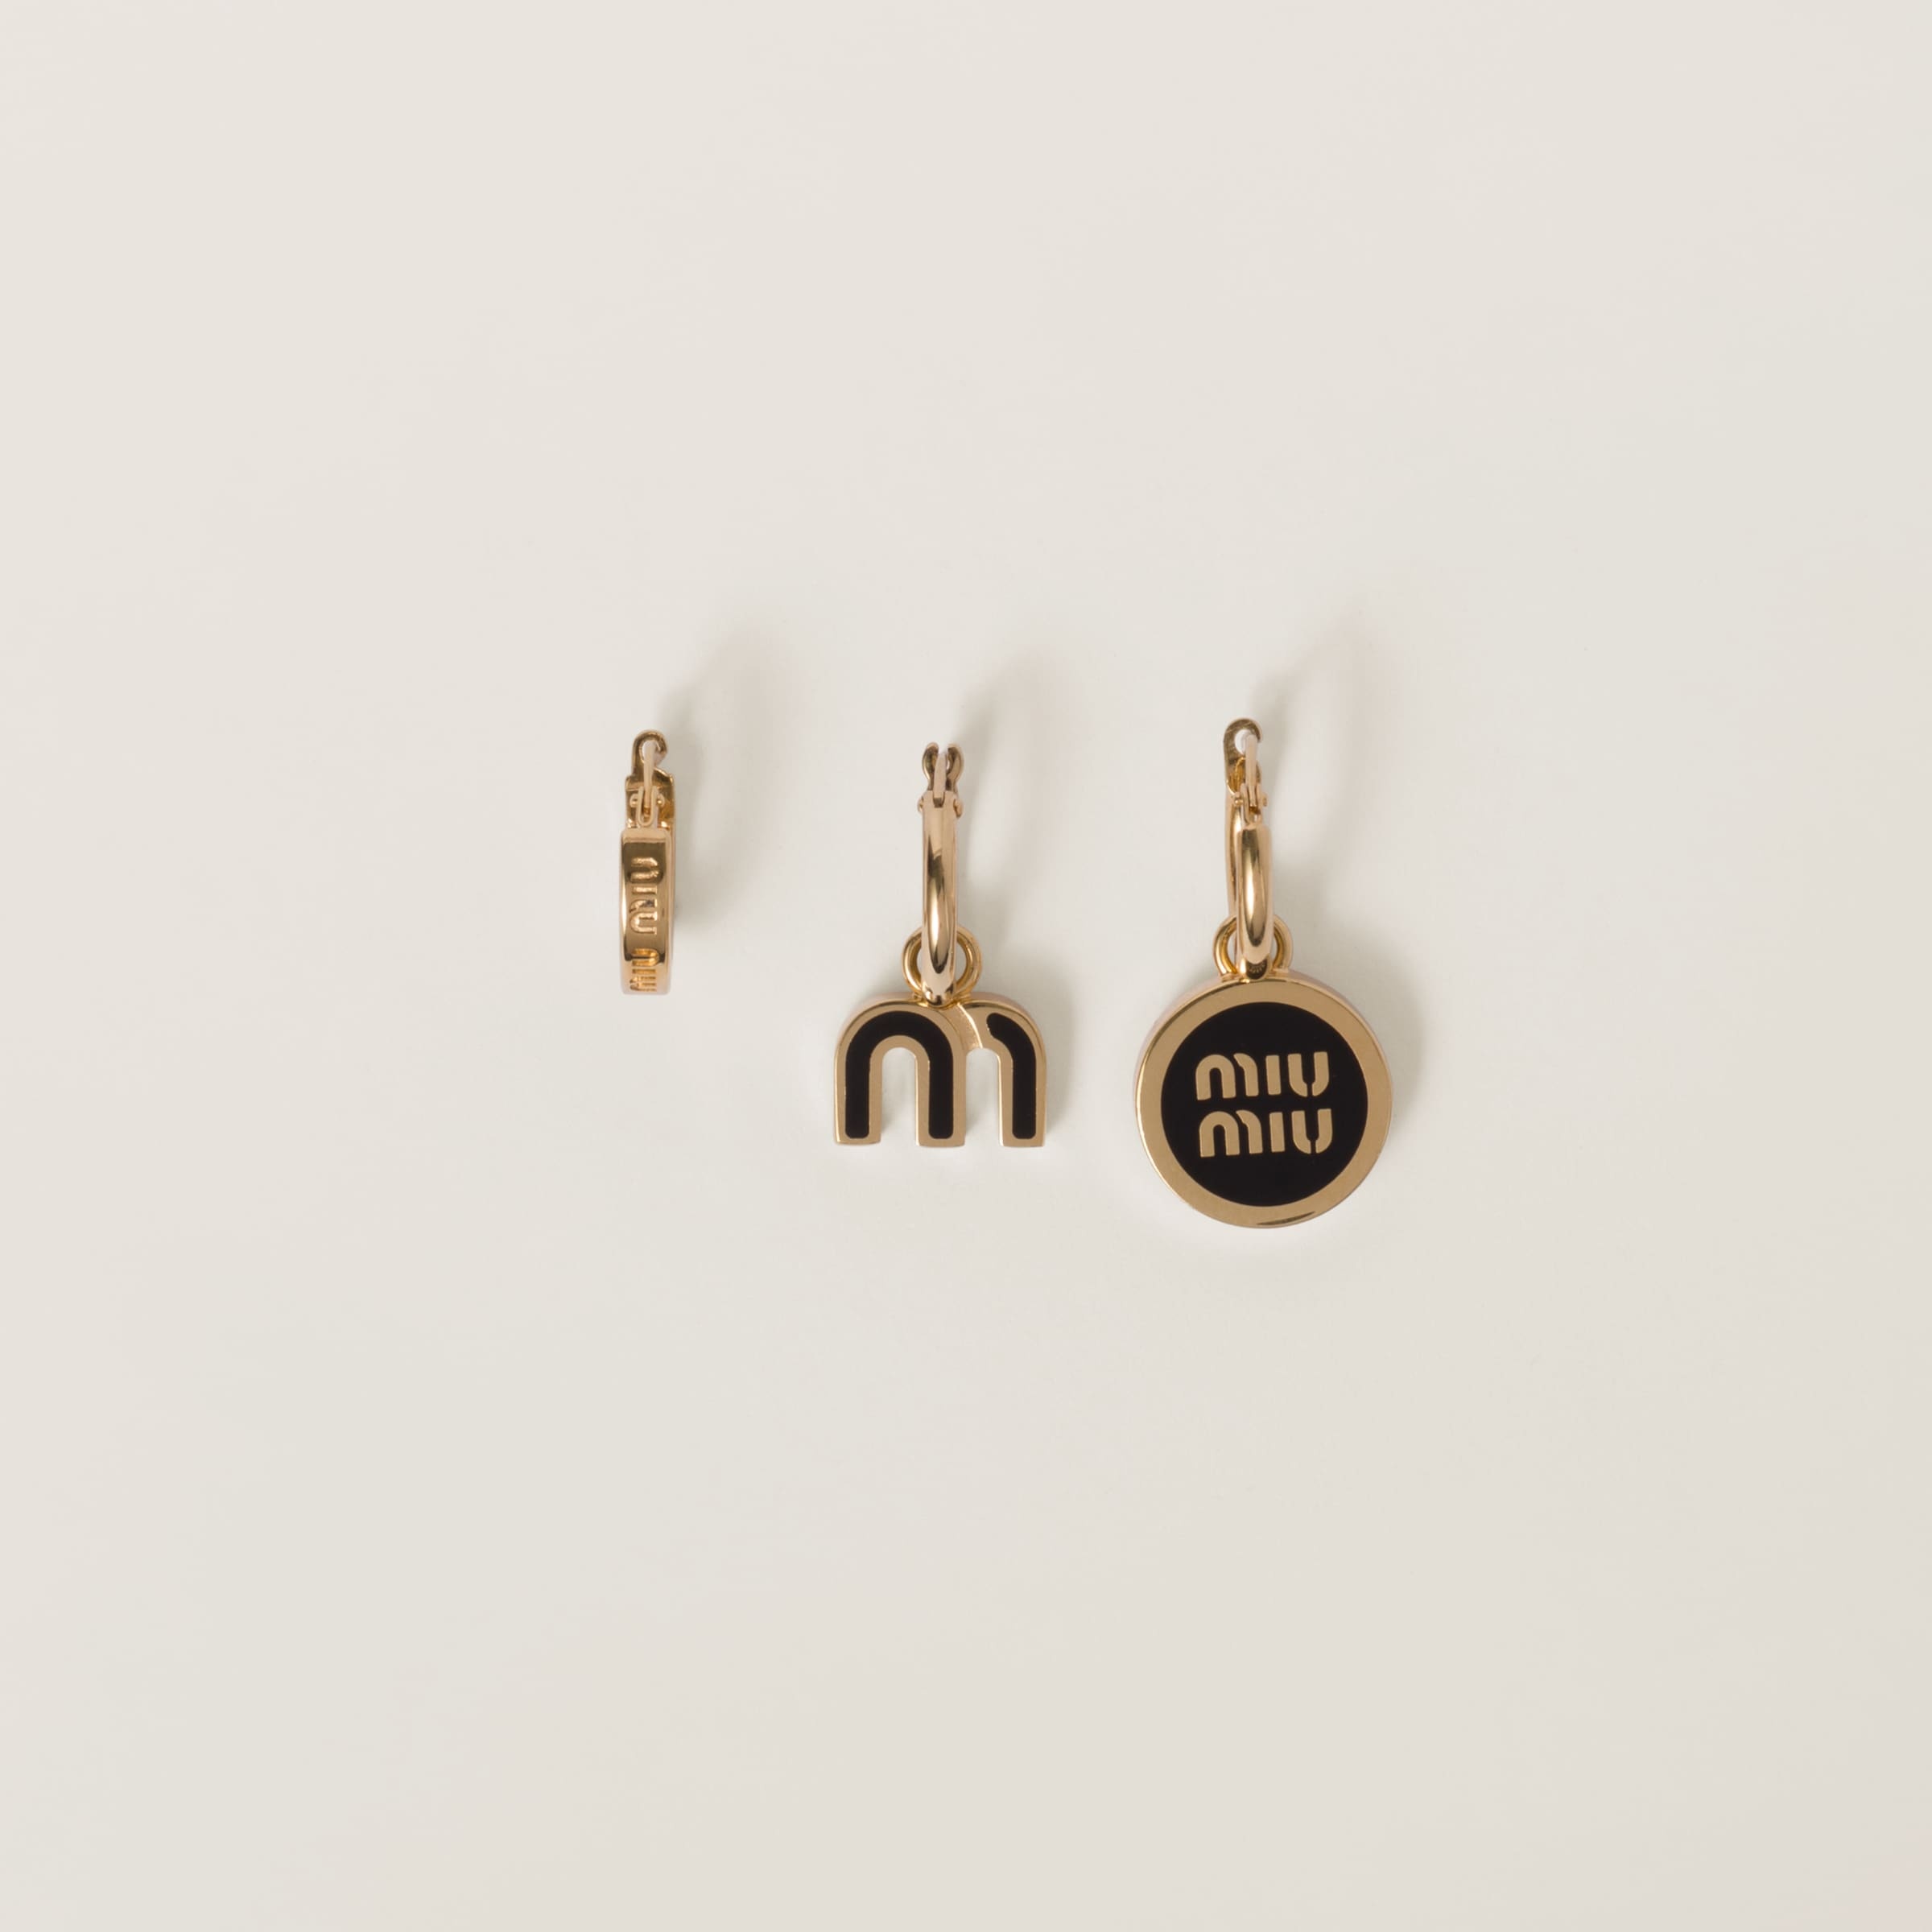 Set of enameled metal earrings - 1